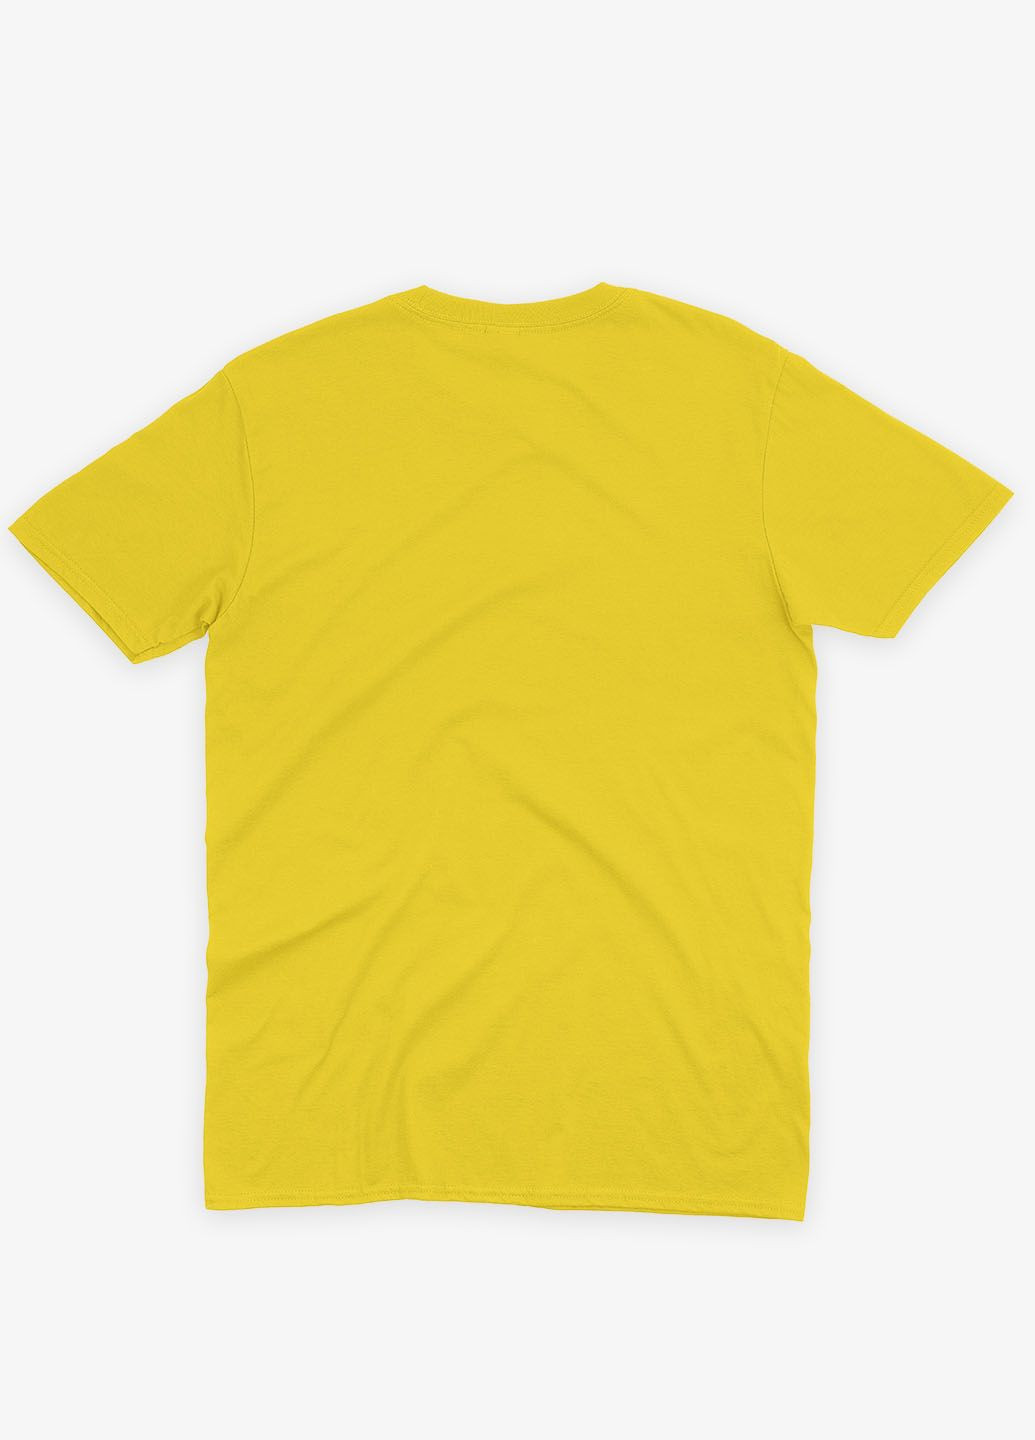 Желтая летняя женская футболка с патриотическим принтом украина сверх усе (ts001-5-sun-005-1-115-f) Modno